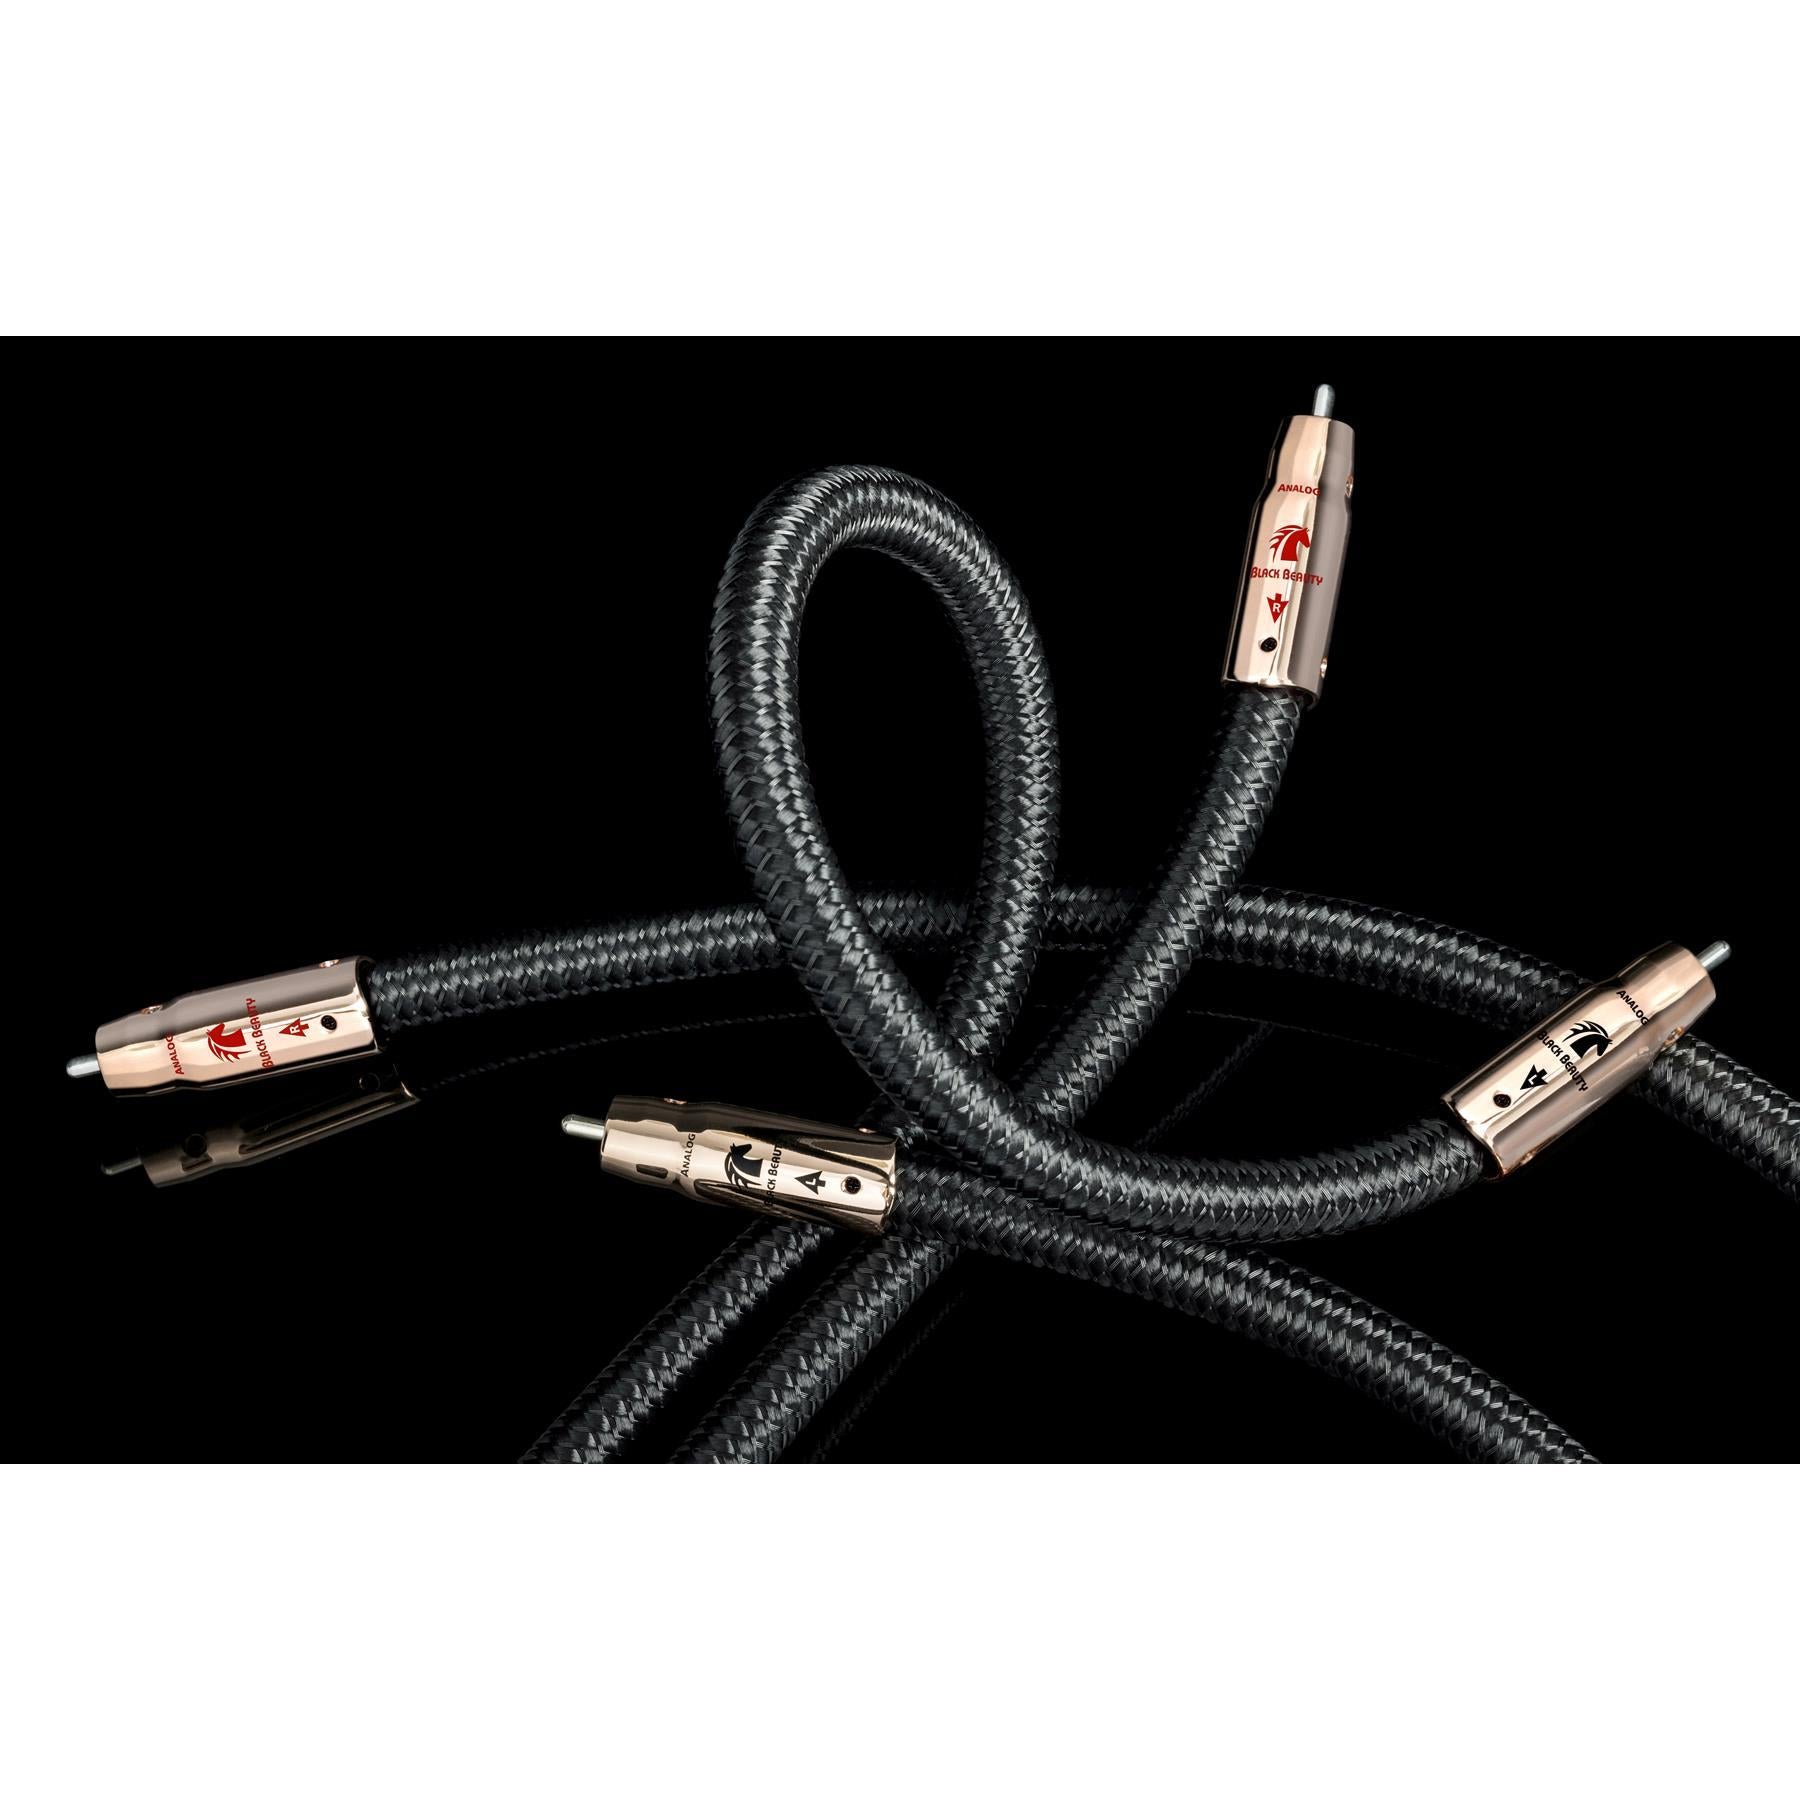 AudioQuest Black Beauty RCA Cables - Pair | ListenUp